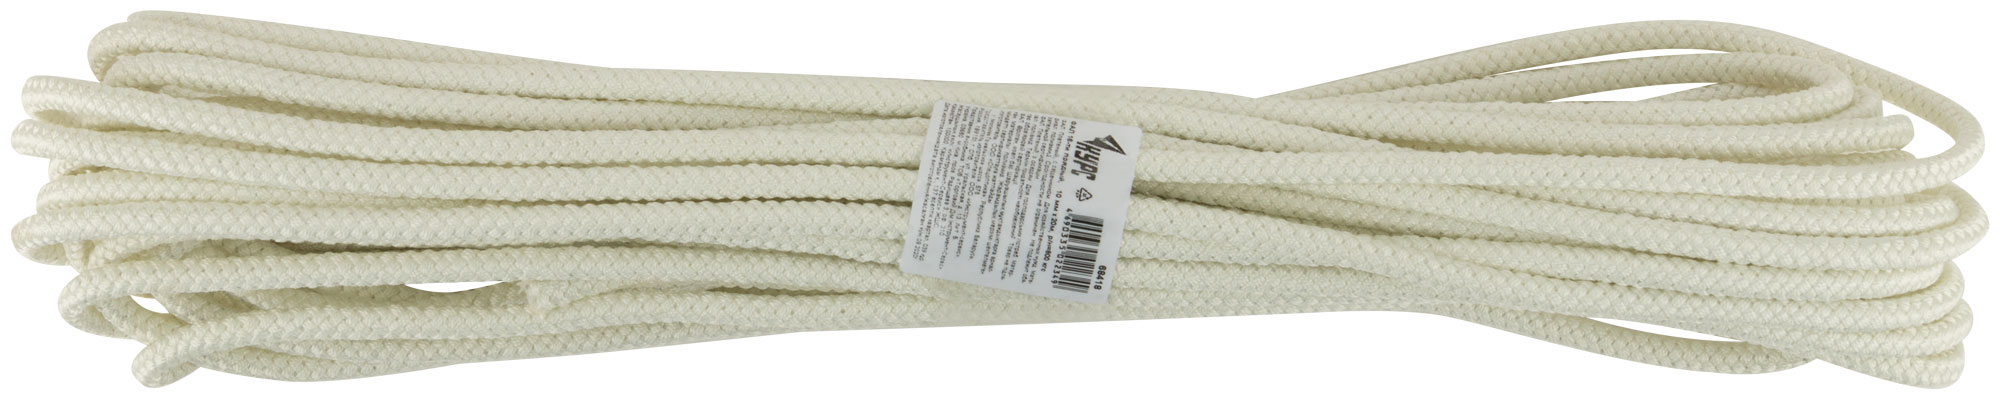 Фал капроновый плетеный 16-ти прядный с сердечником 10 мм х 20 м, р/н= 800 кгс